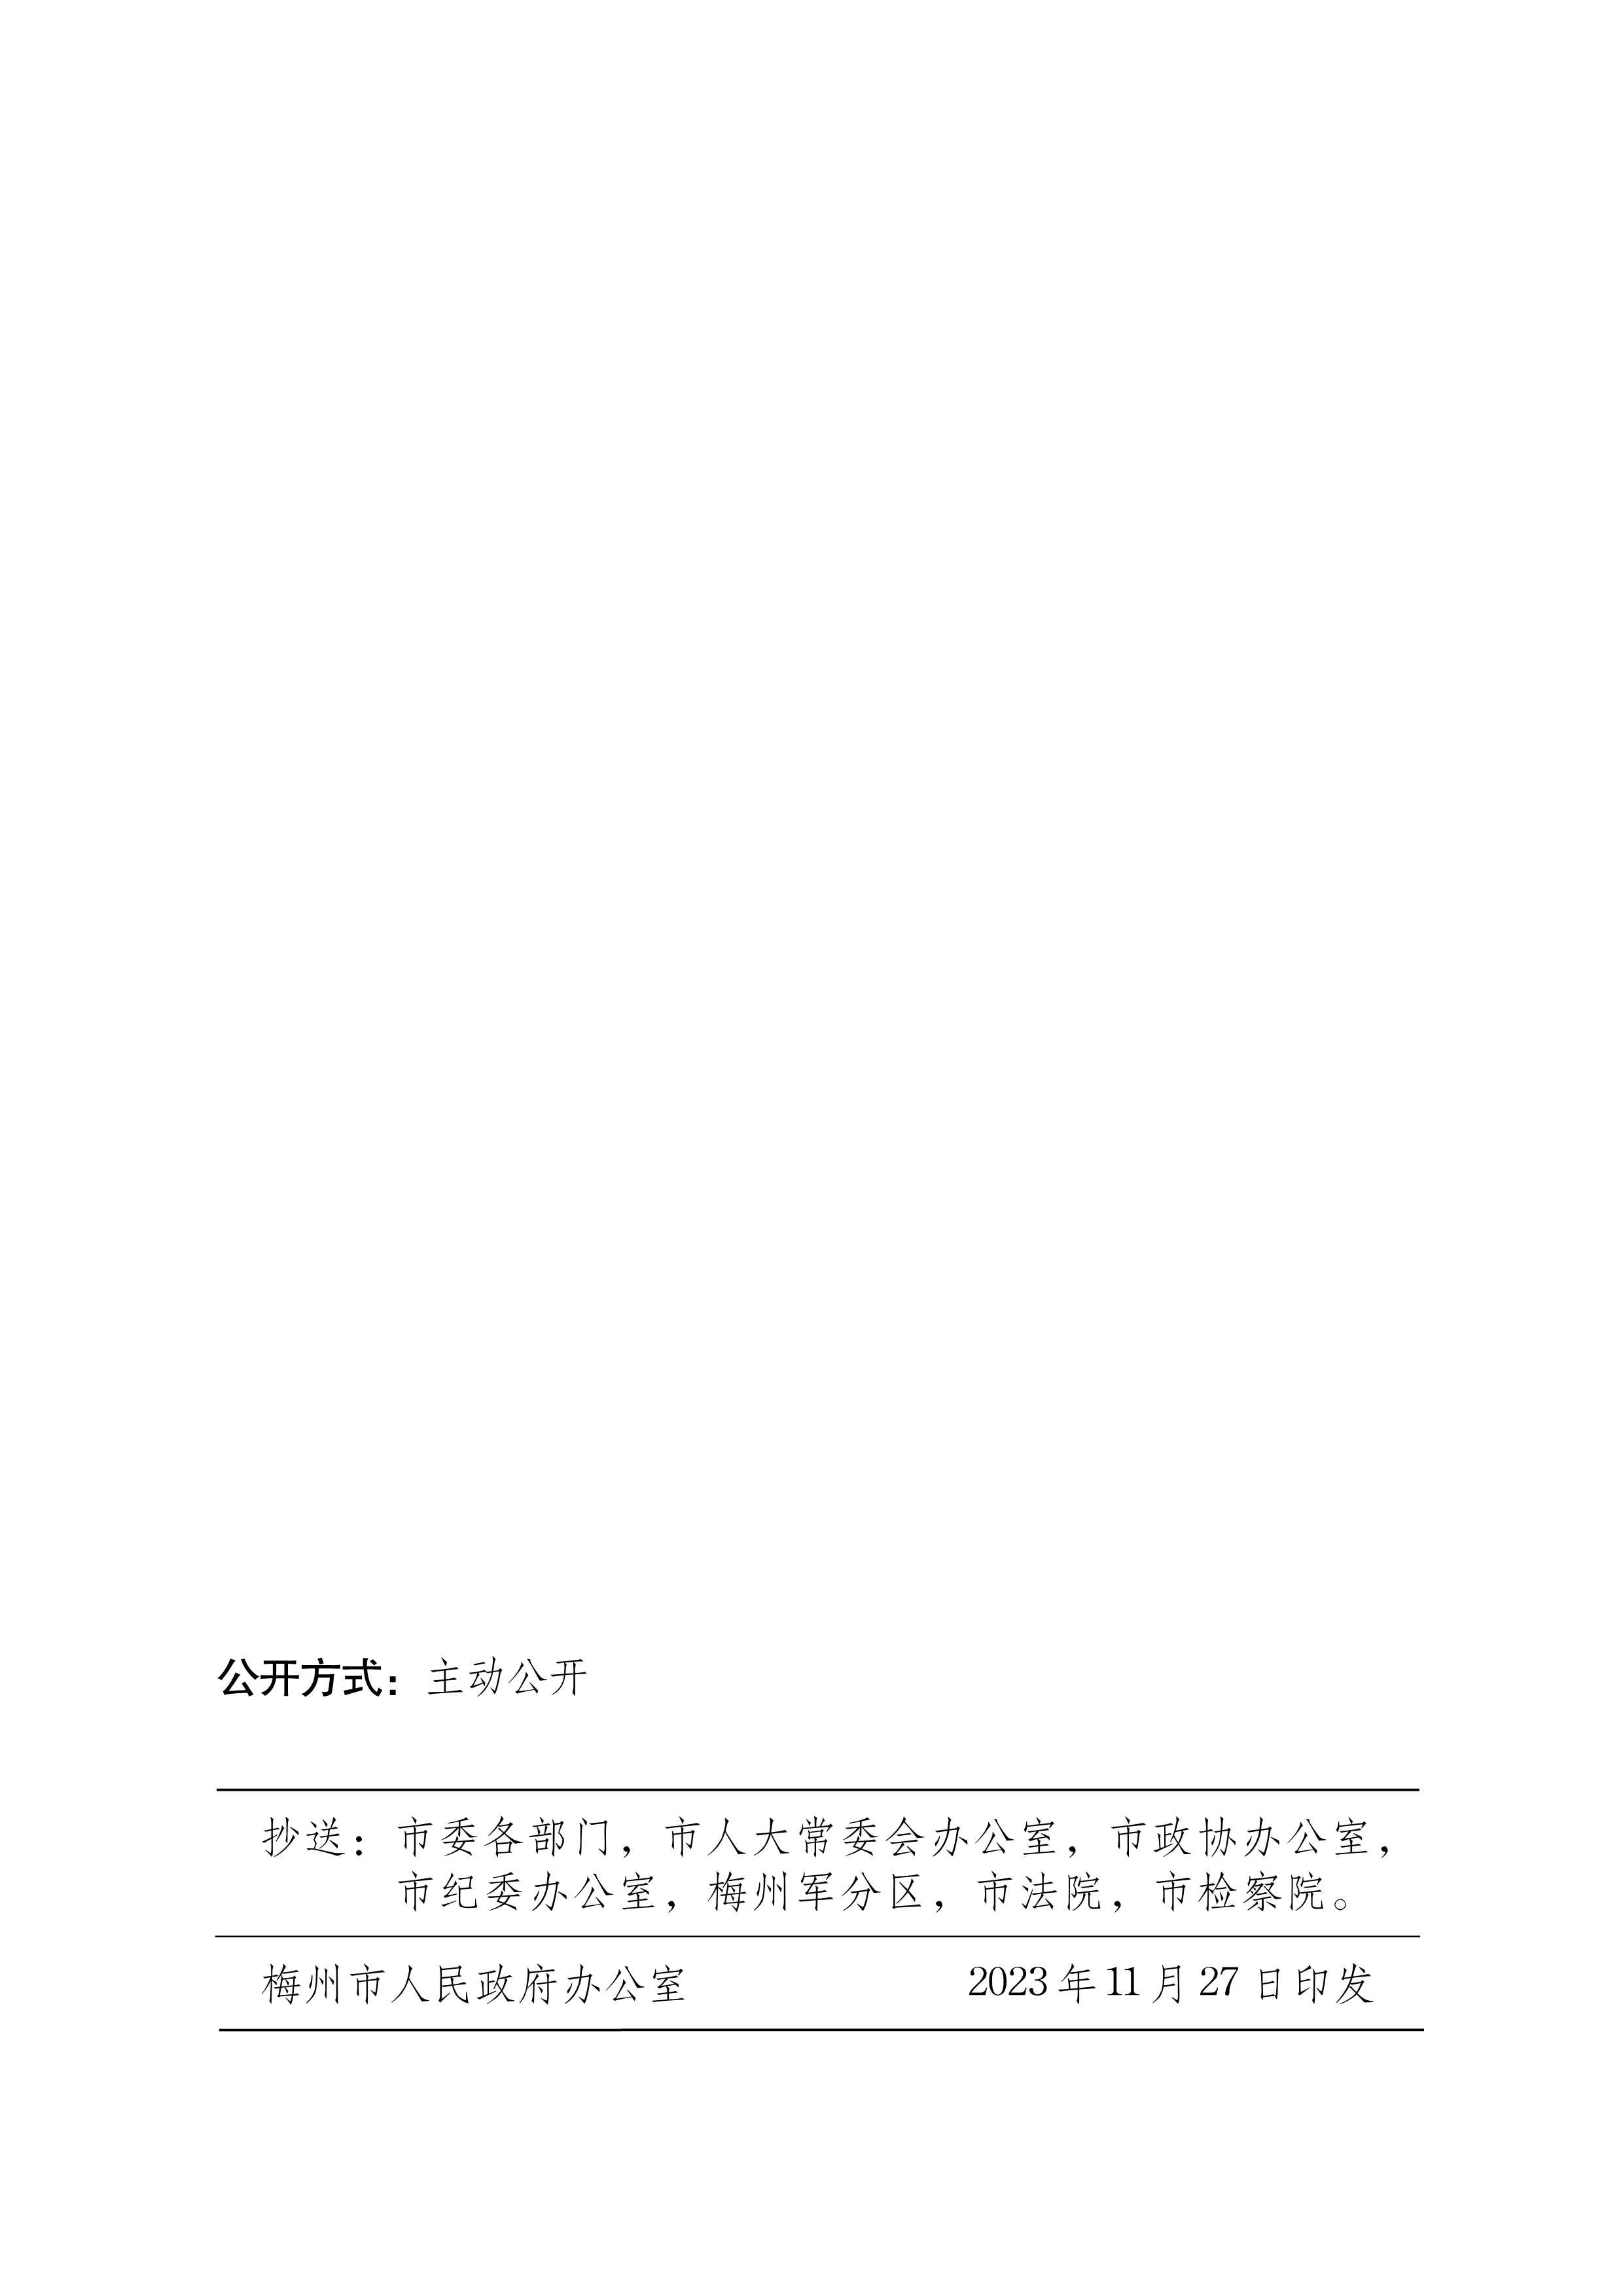 梅州市人民政府关于梅州市燃气锅炉执行大气污染物特别排放限值的通告_image4_out.jpg